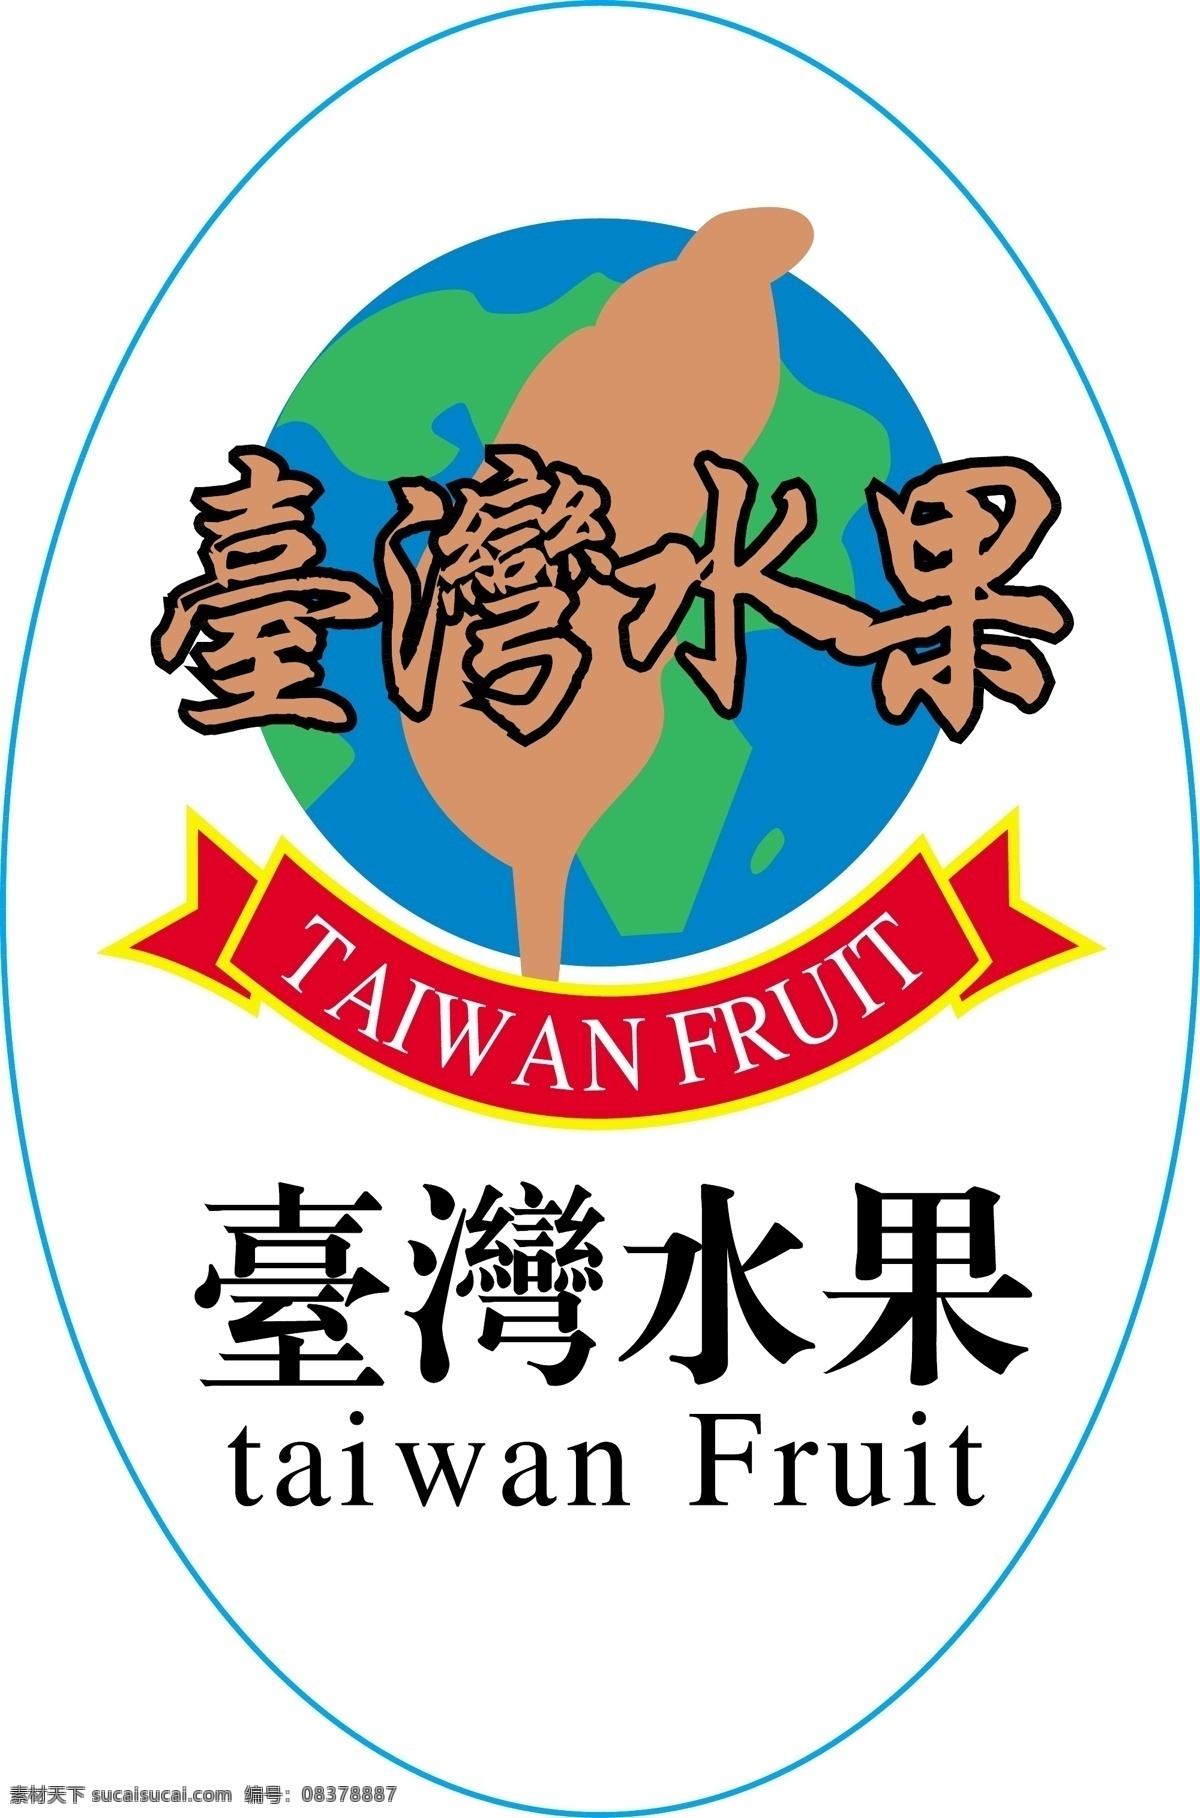 水果 标签 标签设计 水果标签 水果标签设计 台湾 台湾水果 矢量 淘宝素材 淘宝促销标签